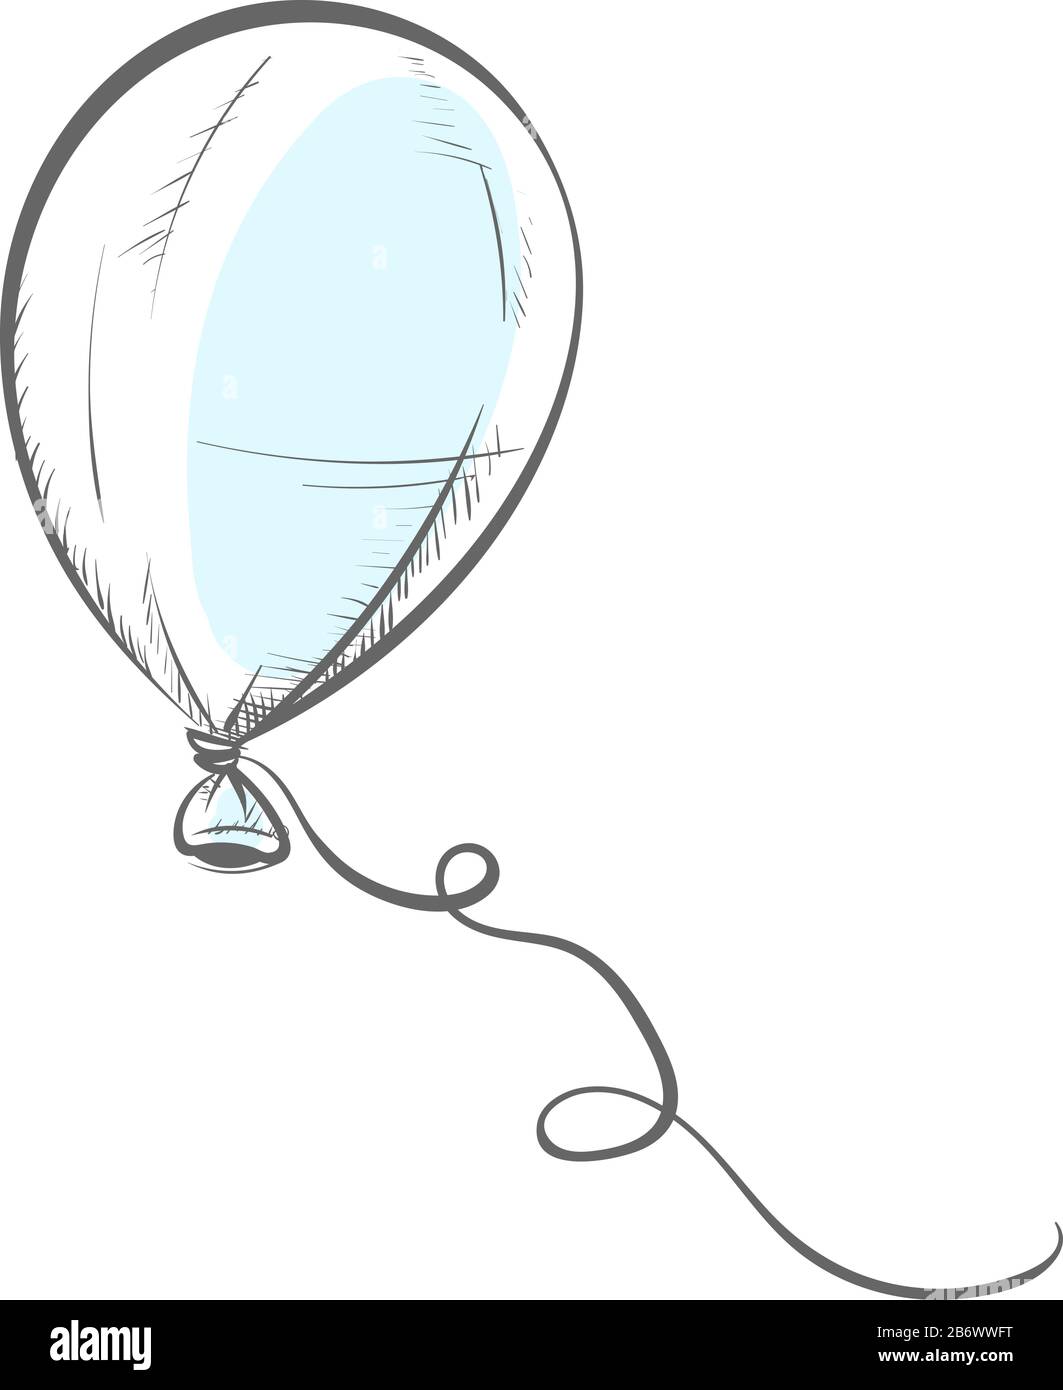 50 Balloon drawing ideas | balloons, drawings, air balloon